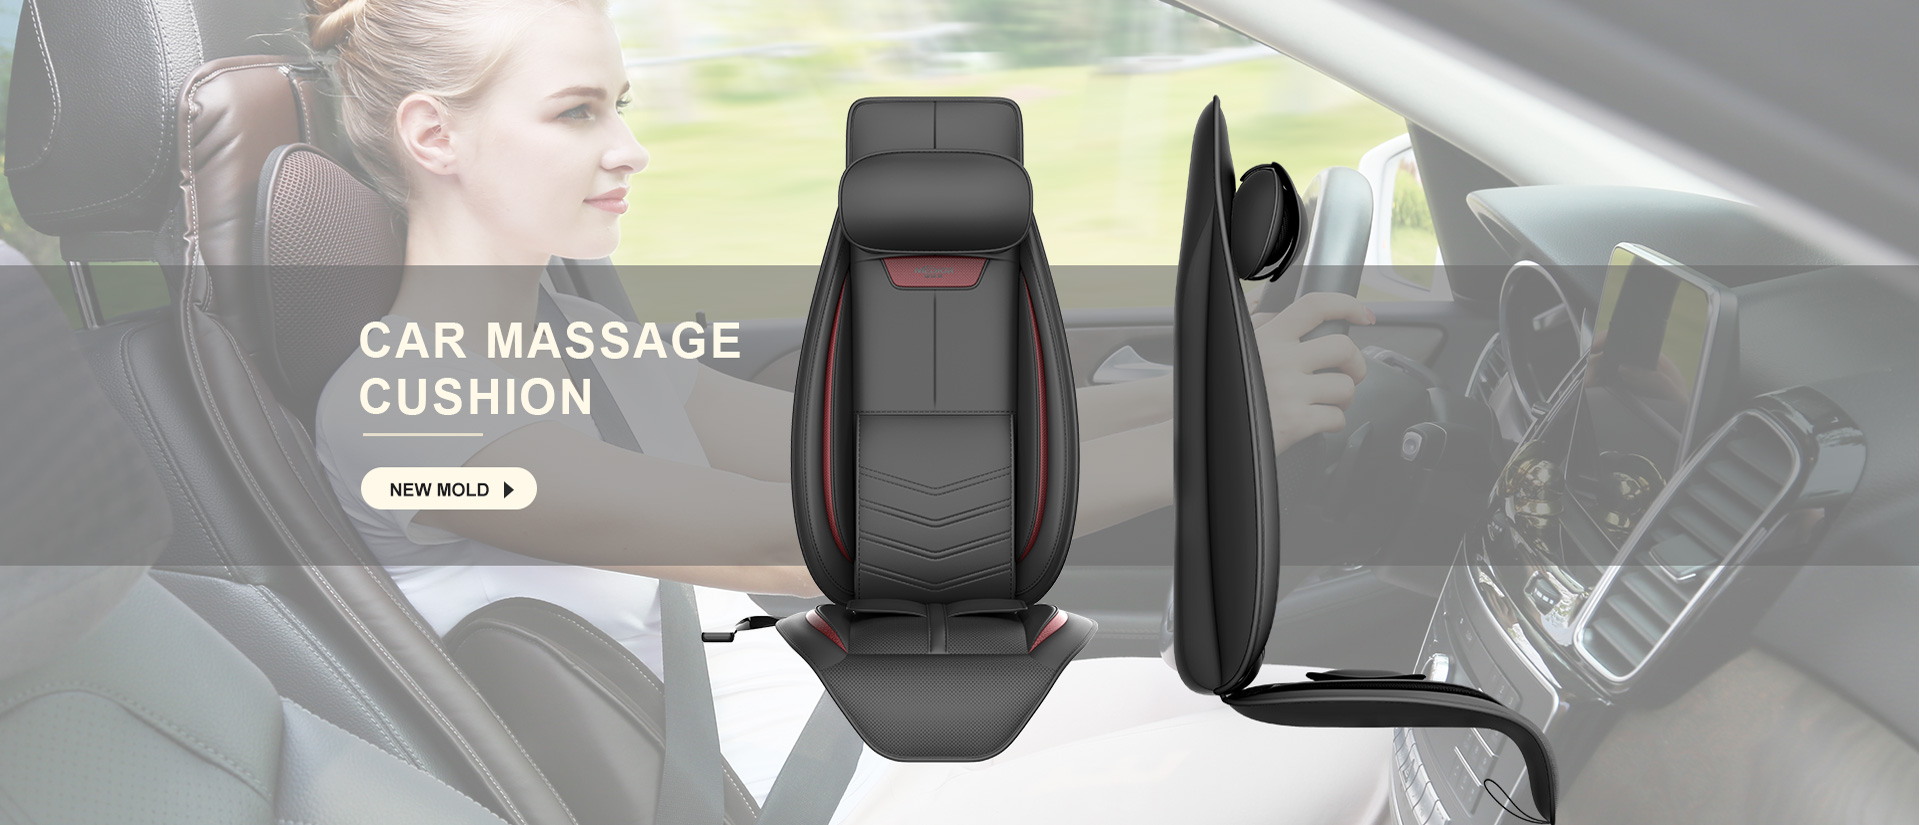 Car massage cushion